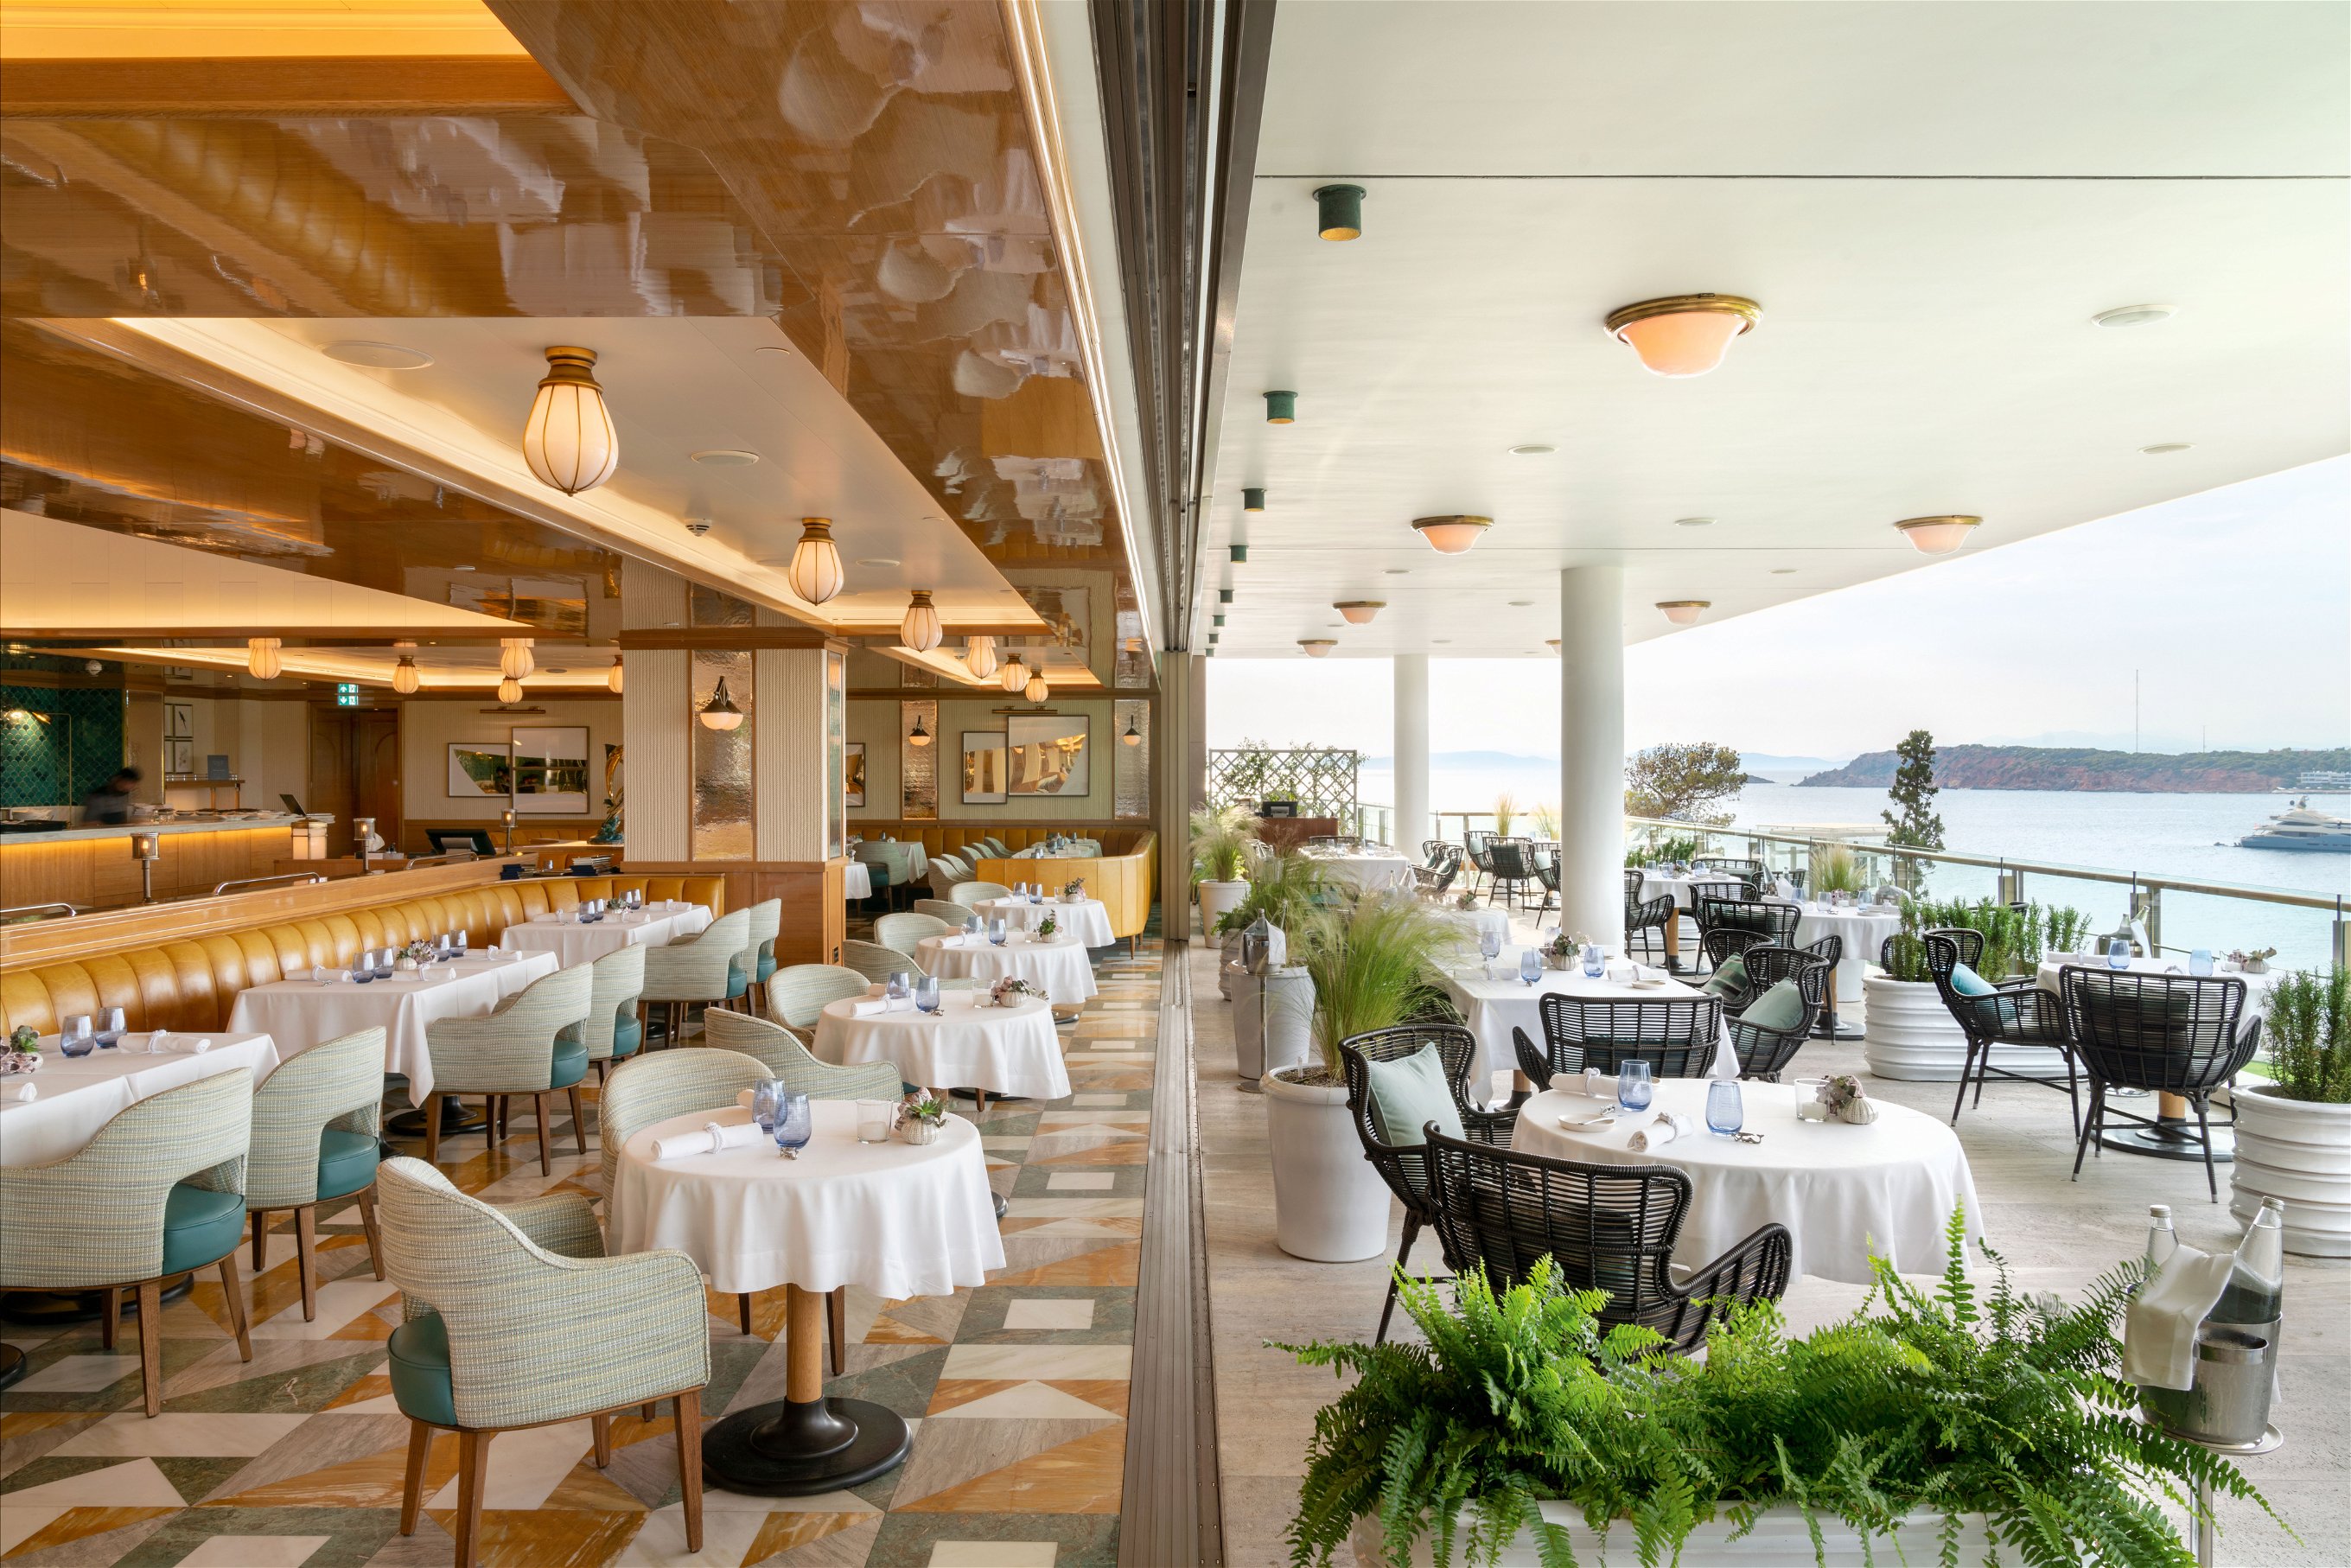 Nicht anders stellt man sich das angenehme Leben vor: eine schöne Terrasse am Meer, eine tolle Fischküche und gute Weine – wie im Restaurant «Pelagos» in Athen.